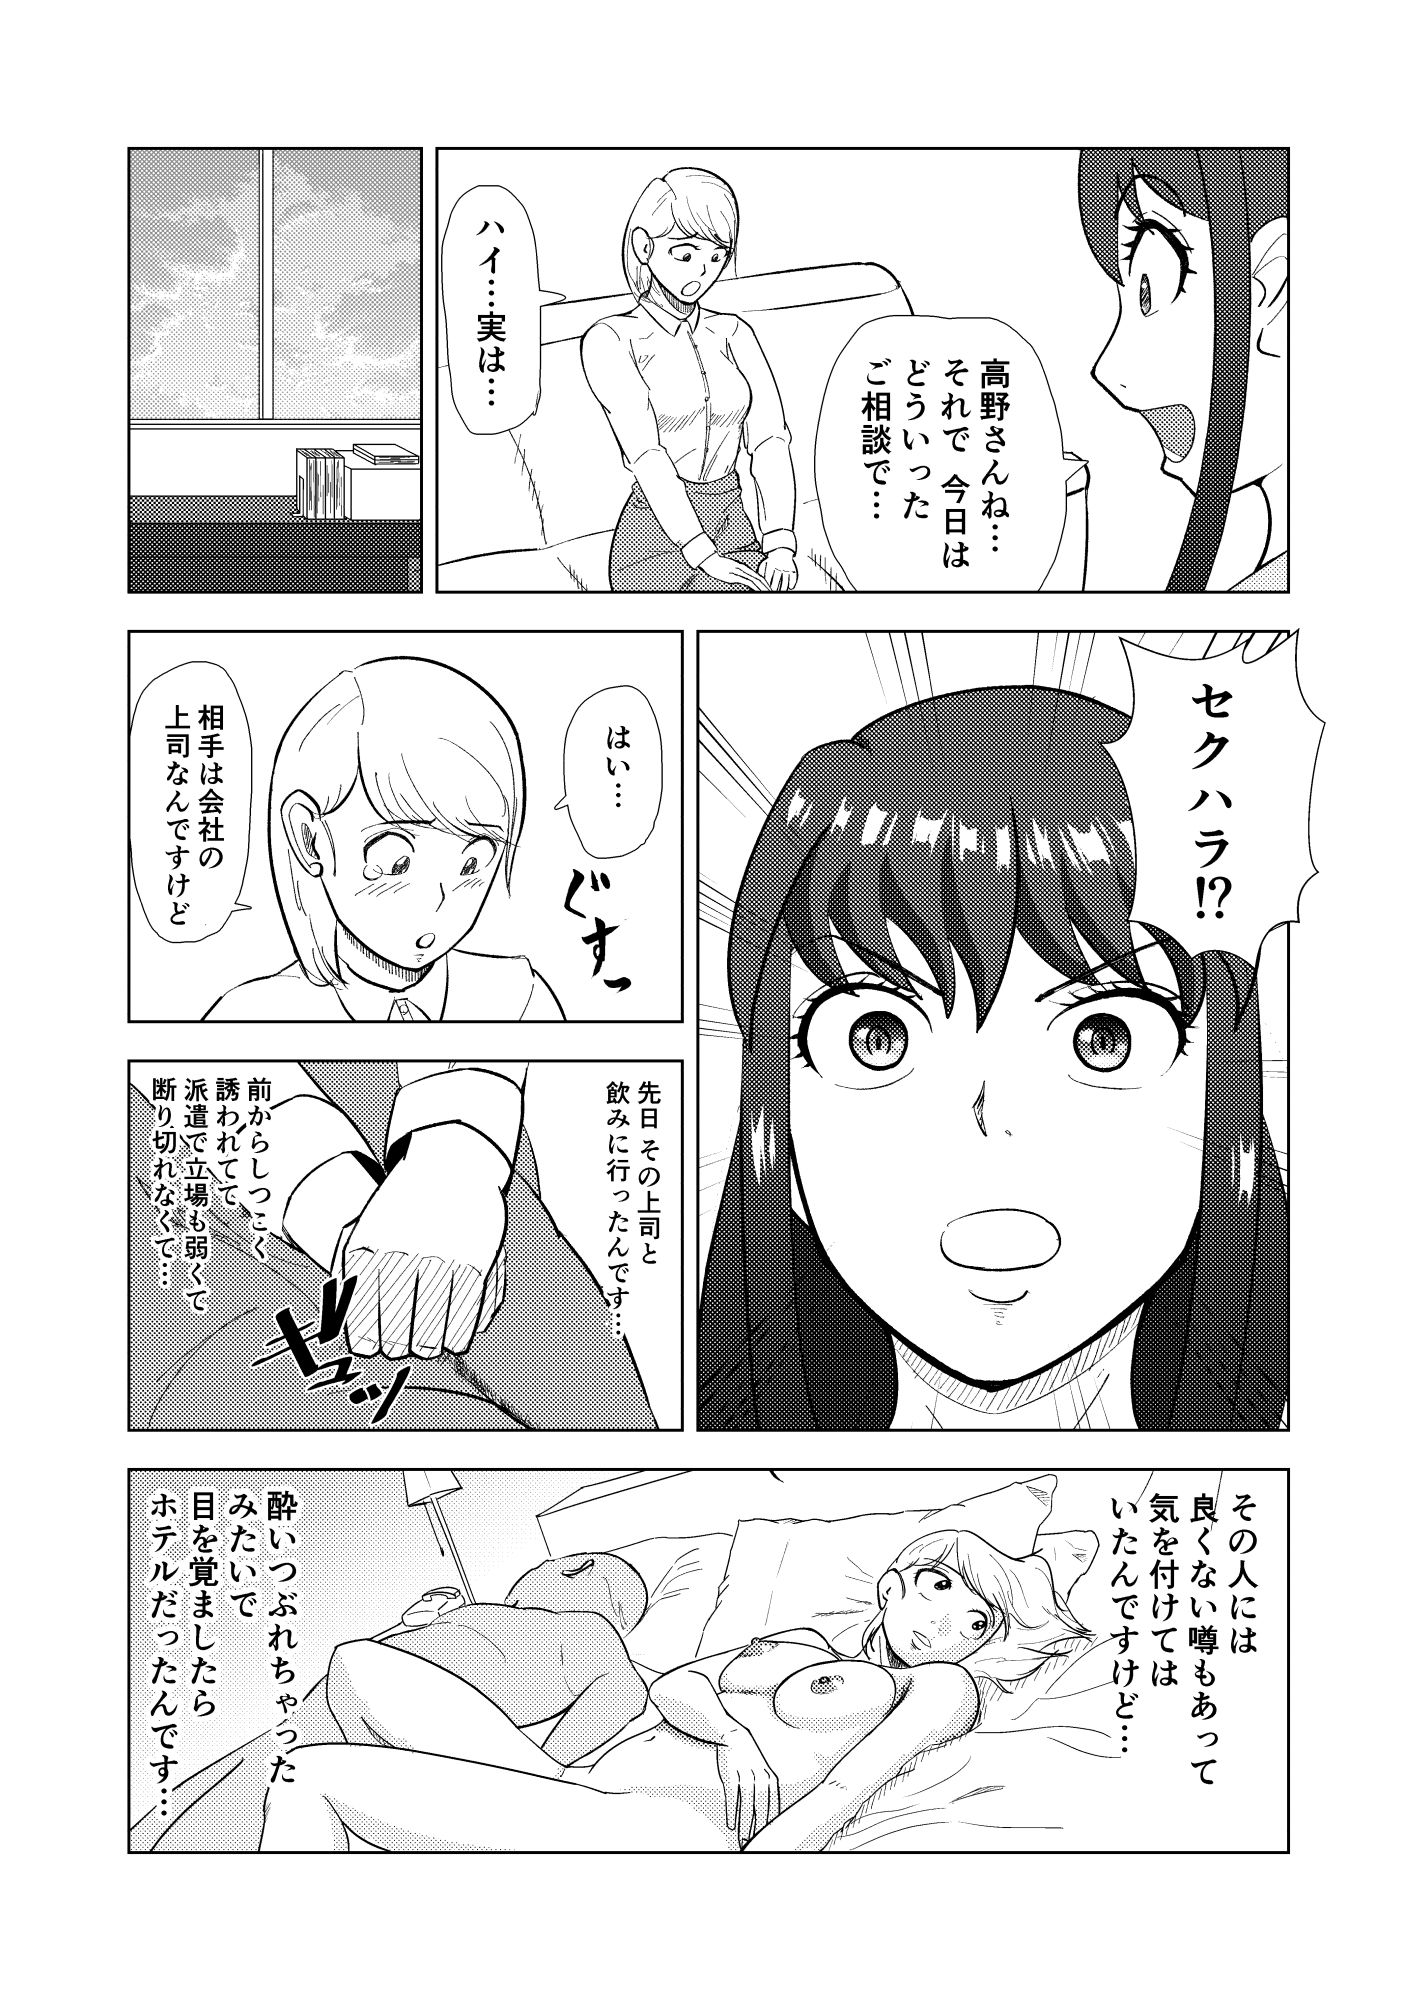 探偵 九条玲子の事件簿 〜セクハラ調査編〜3